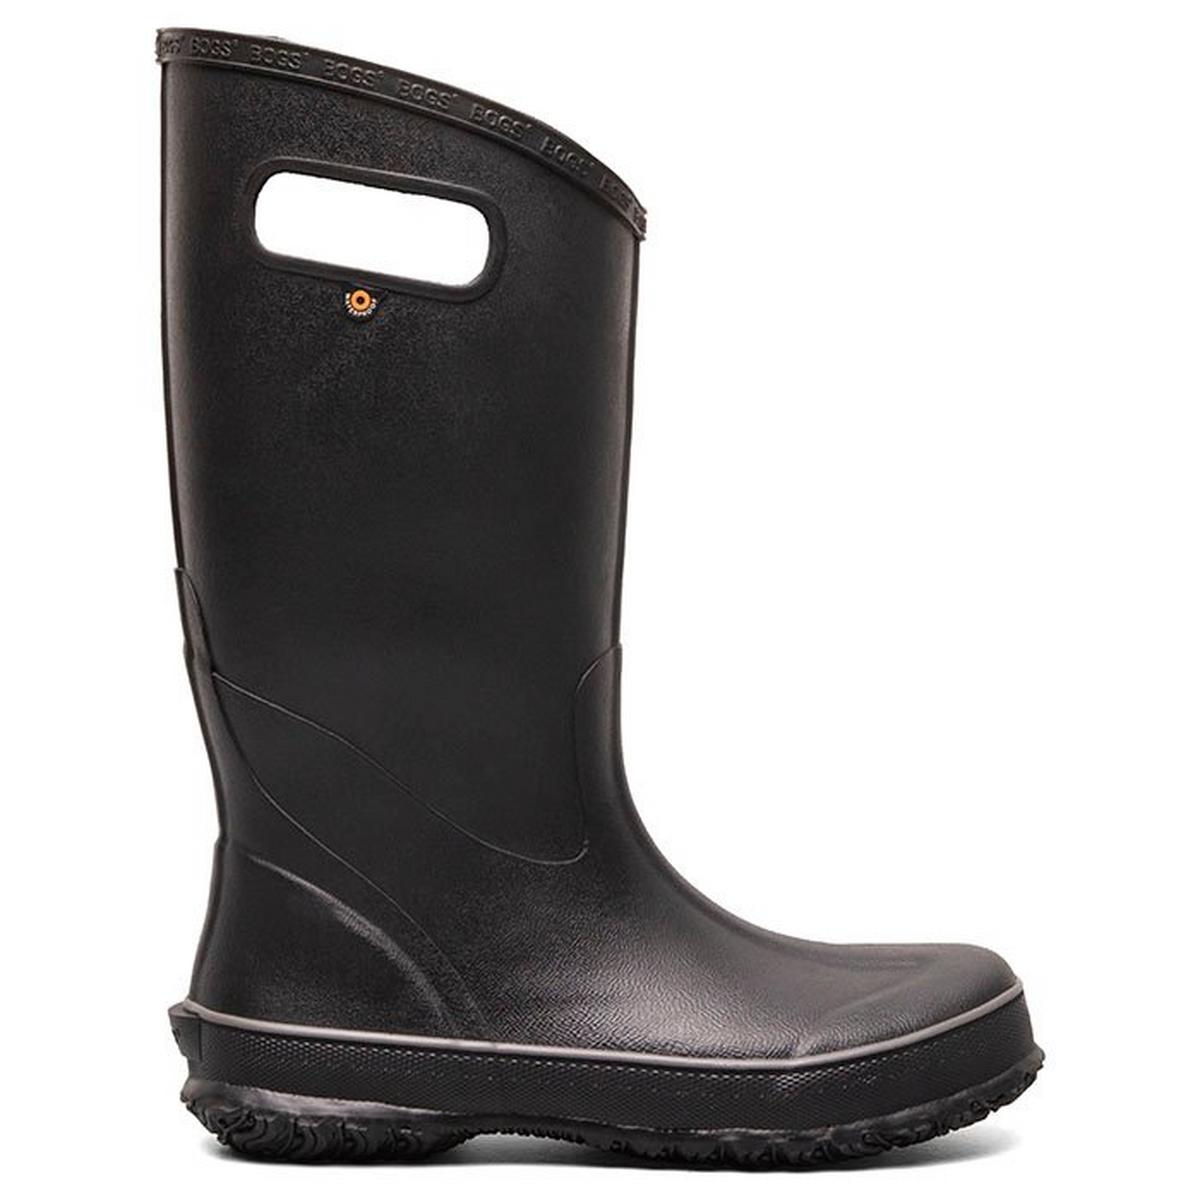 Men's Waterproof Rain Boot